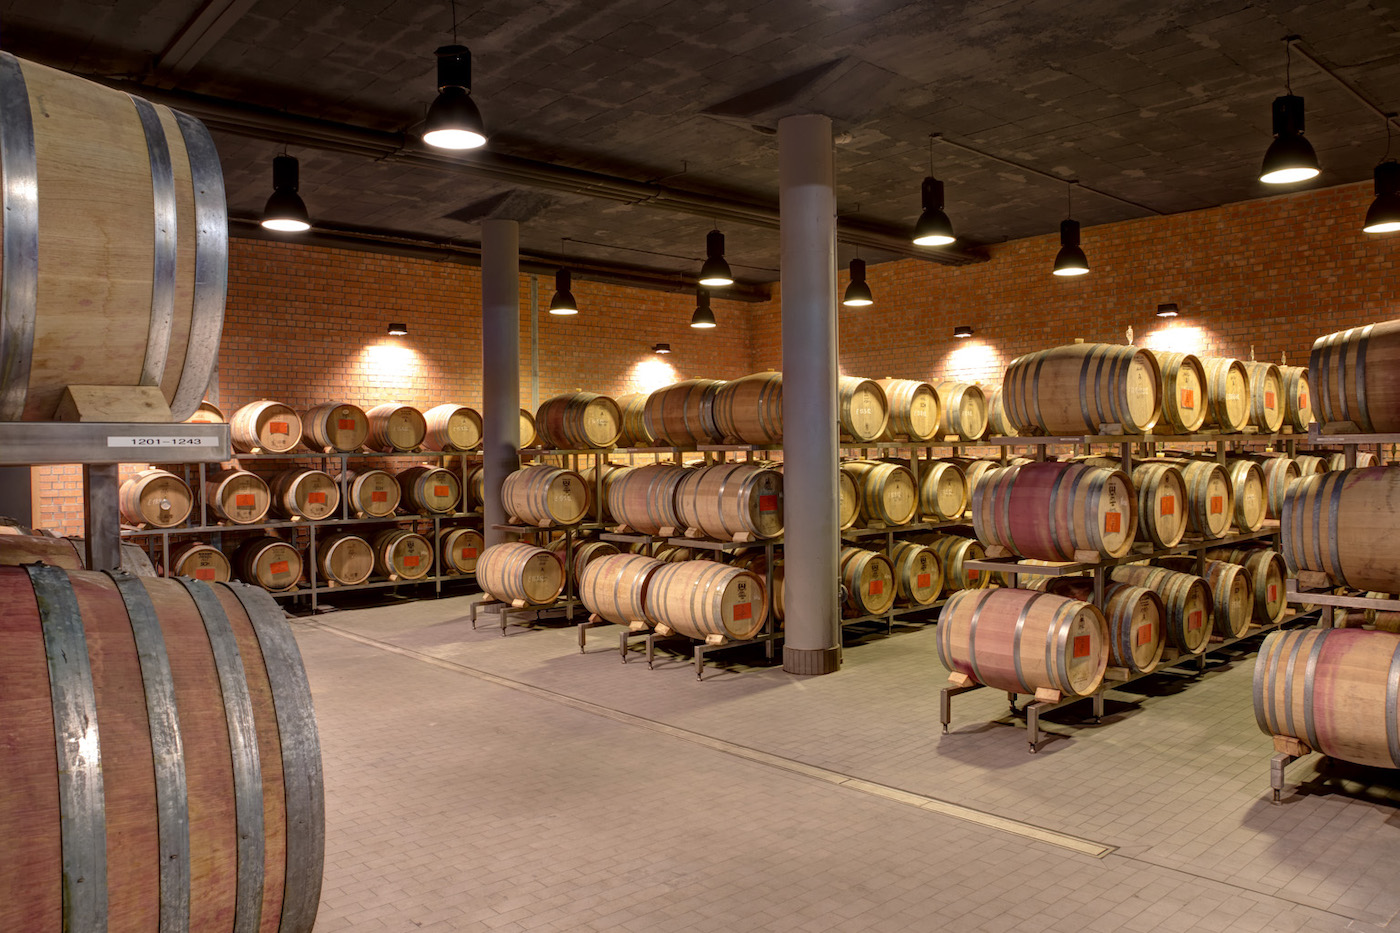 Blick in einen moderneren Weinkeller, in dem in Reihen aufgestelle größere und kleinere Weinfässer aus Holz lagern.